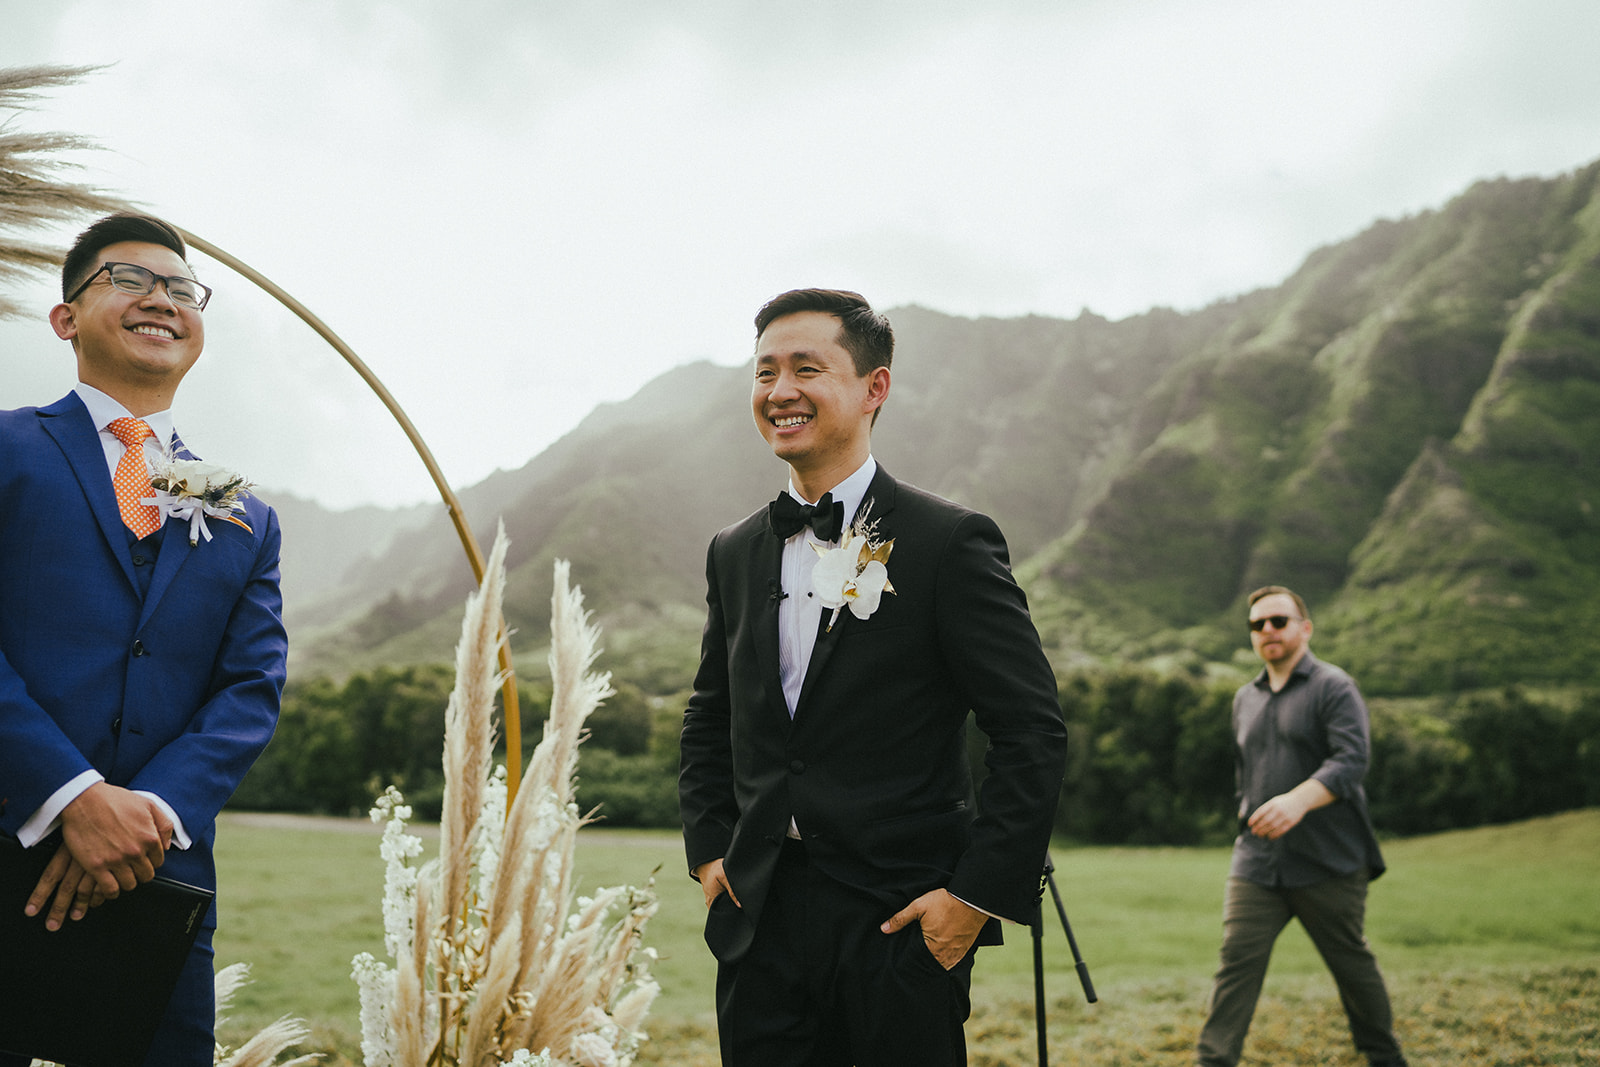 Wedding ceremony at Kualoa Ranch Hawaii